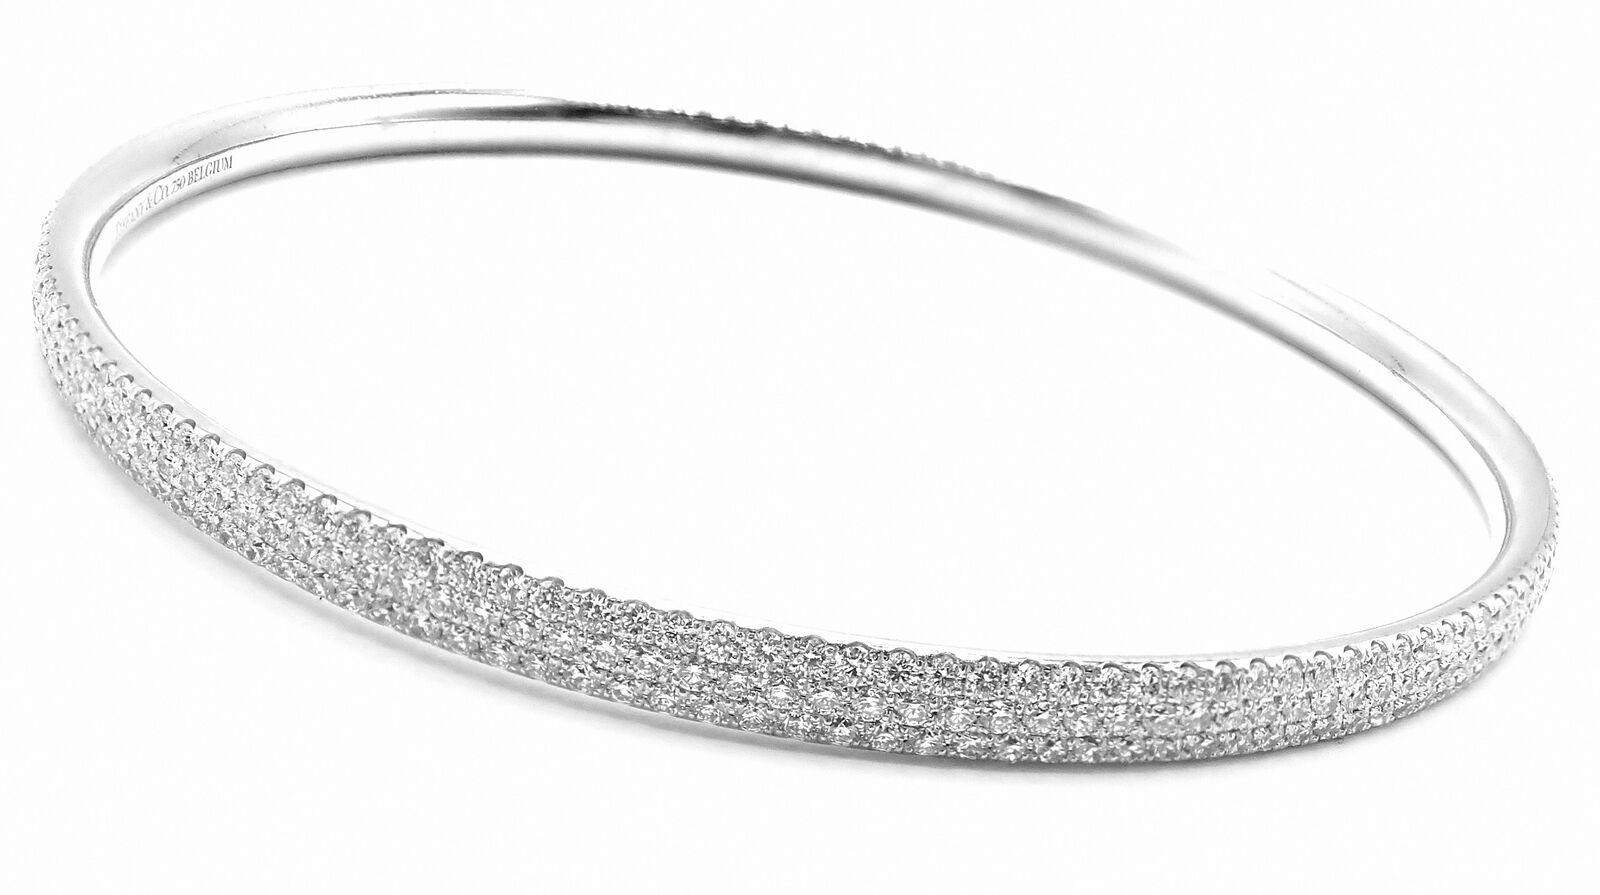 Bracelet en or blanc 18k à trois rangs de diamants et à glissière de Tiffany & Co. 
Avec des diamants ronds de taille brillante VS1, couleur G 2.98ct
Ce magnifique bracelet est livré avec sa boîte d'origine Tiffany & Co.
Détails : 
Taille : Moyen